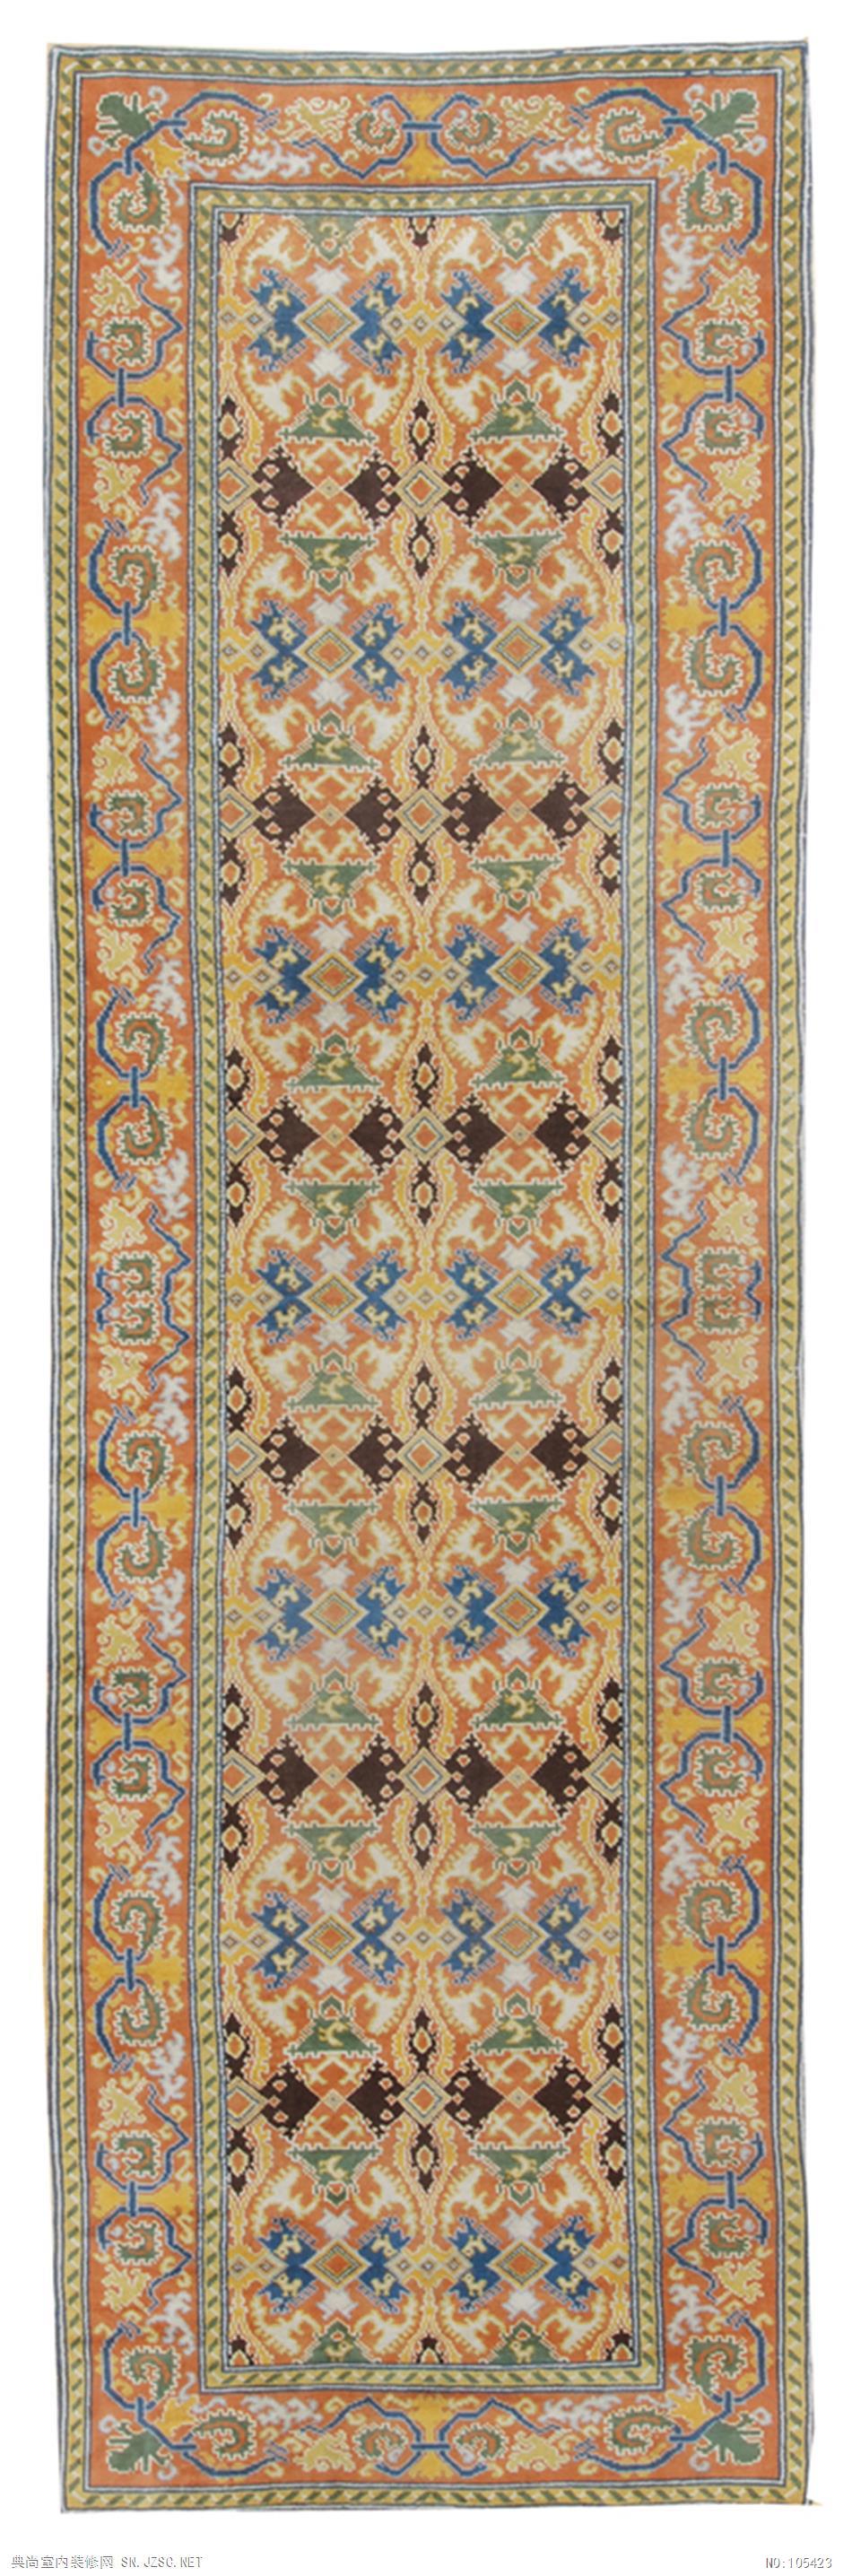 欧式风格地毯 (8)